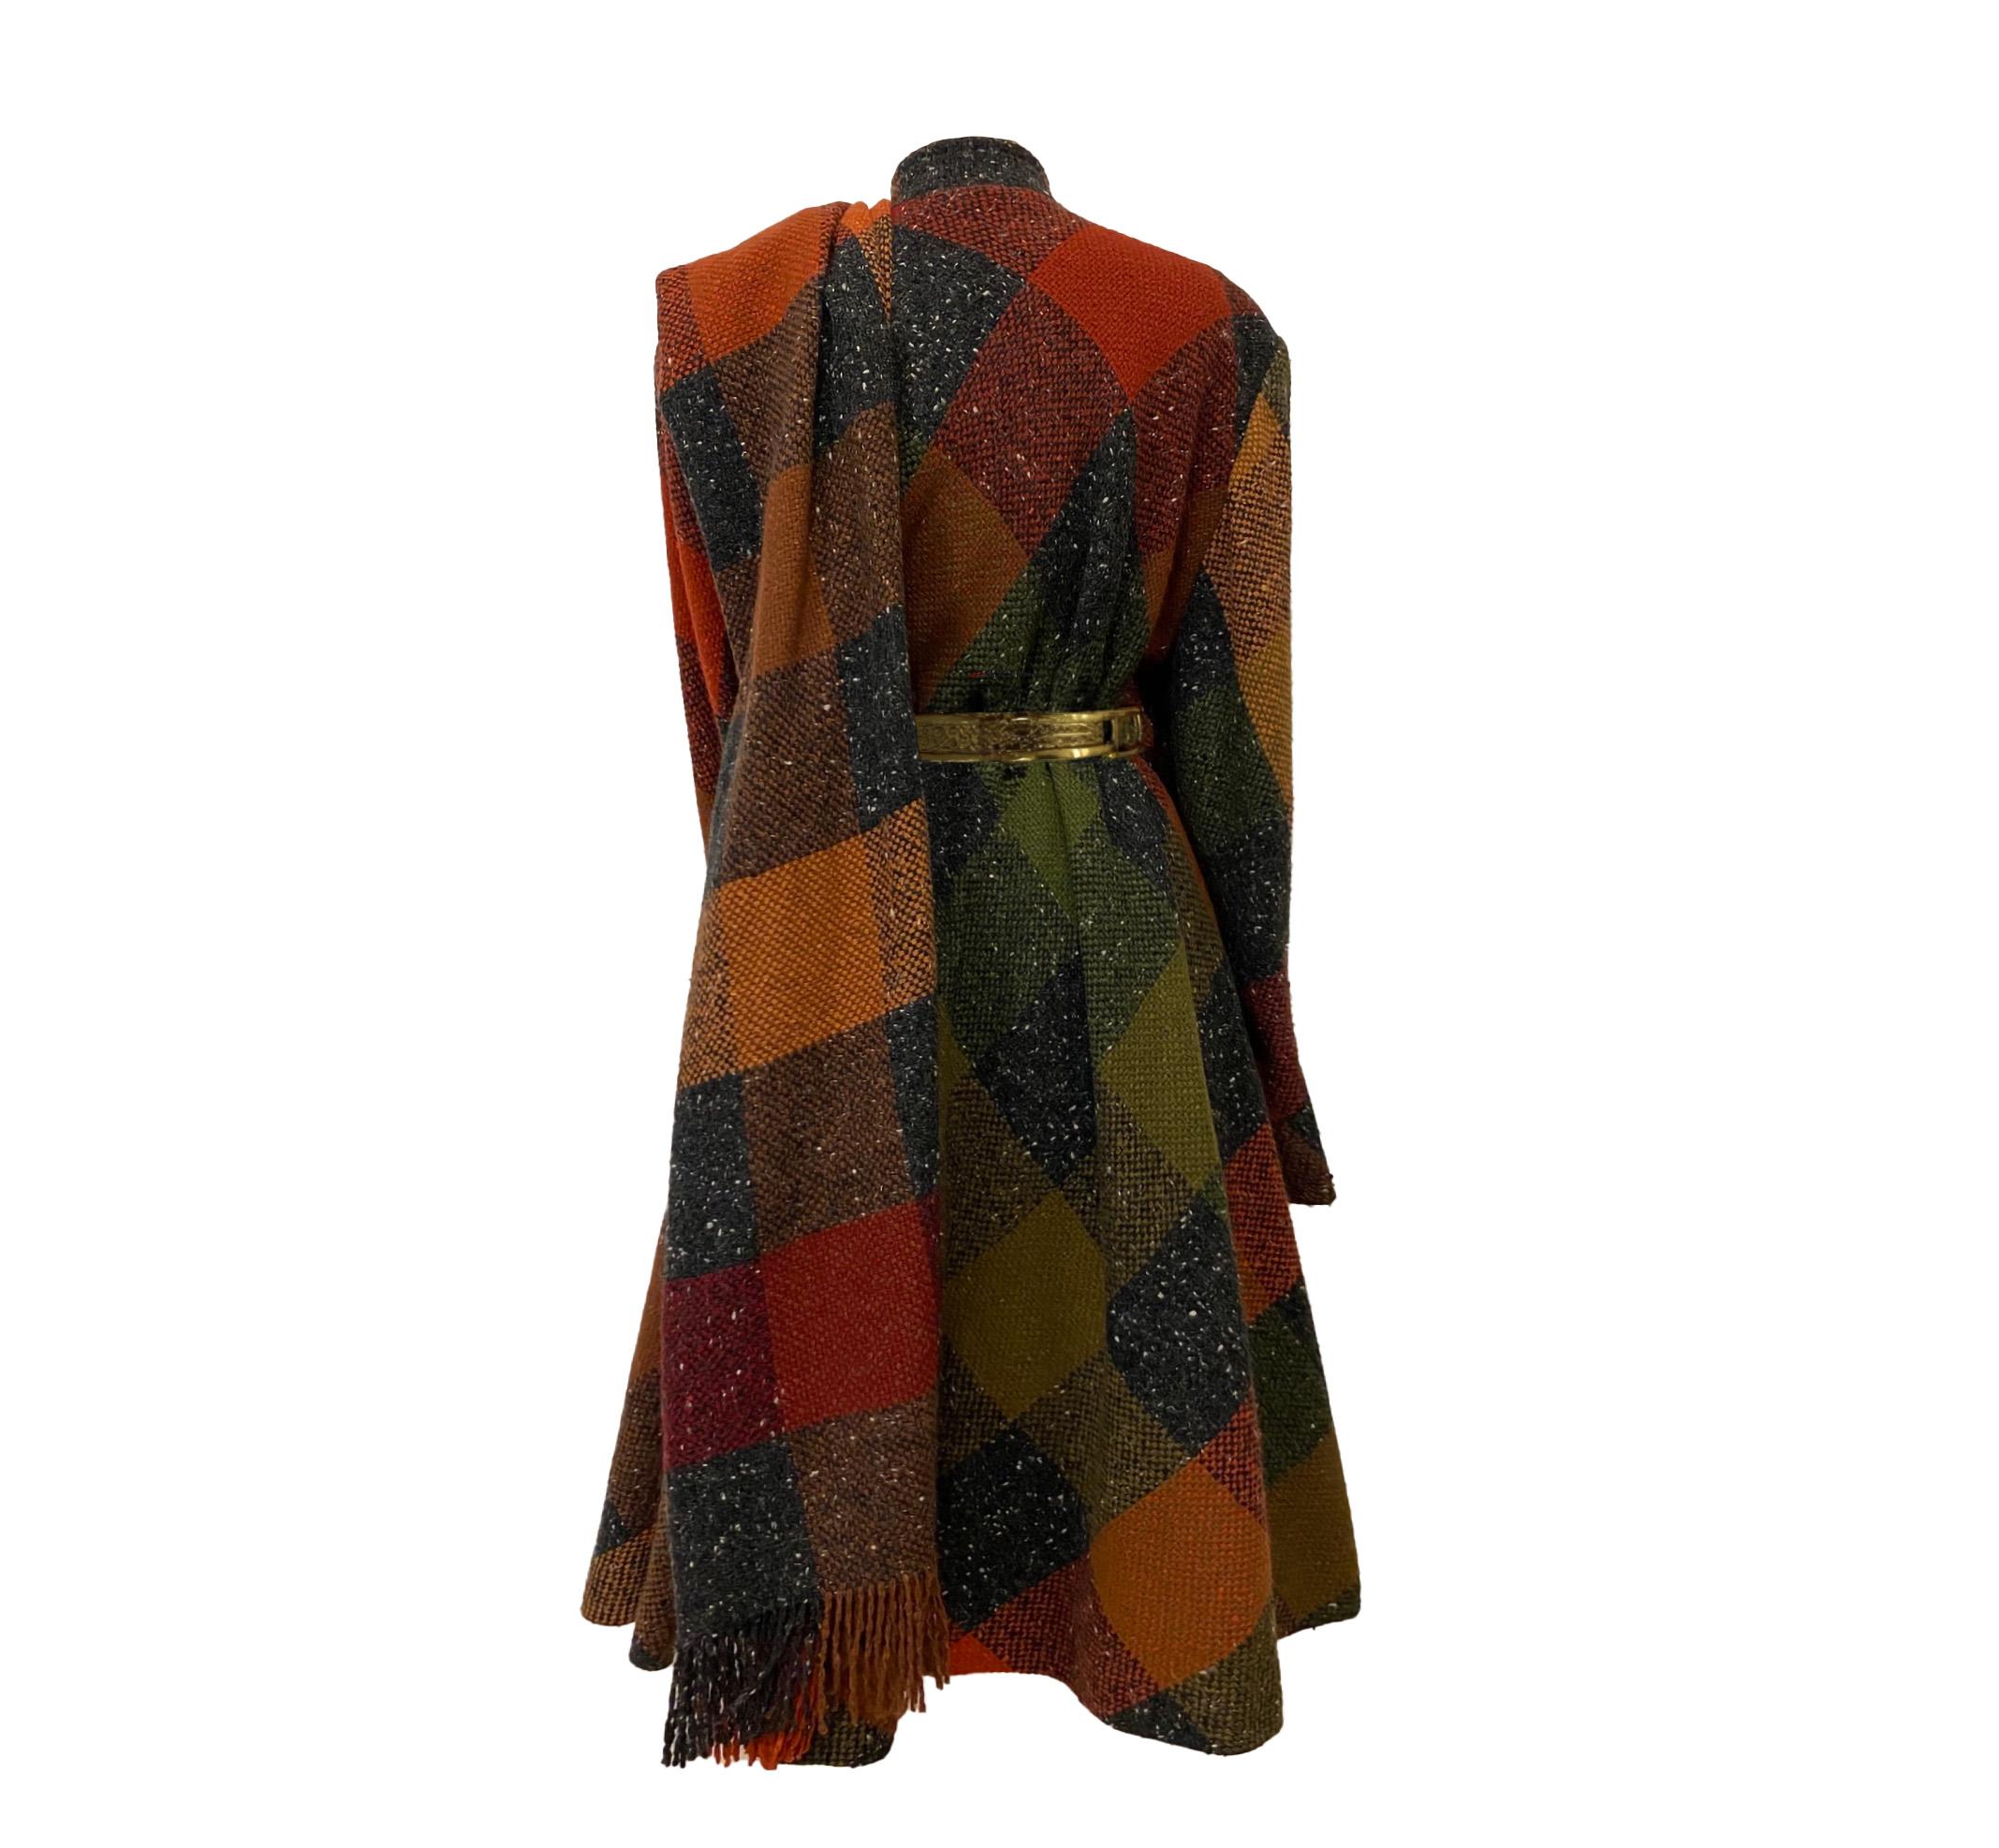 Wahrlich einer der schönsten Mäntel. Ein seltener Mila Schön, est. 80er Jahre Mantel mit aufgesetzter Schärpe. Fabelhafte Luxuskreation eines Herbst-/Wintermantels. Erstaunlich hochwertiger Stoff, Schottenkaro aus Wolle und Seidenfutter. Dies ist